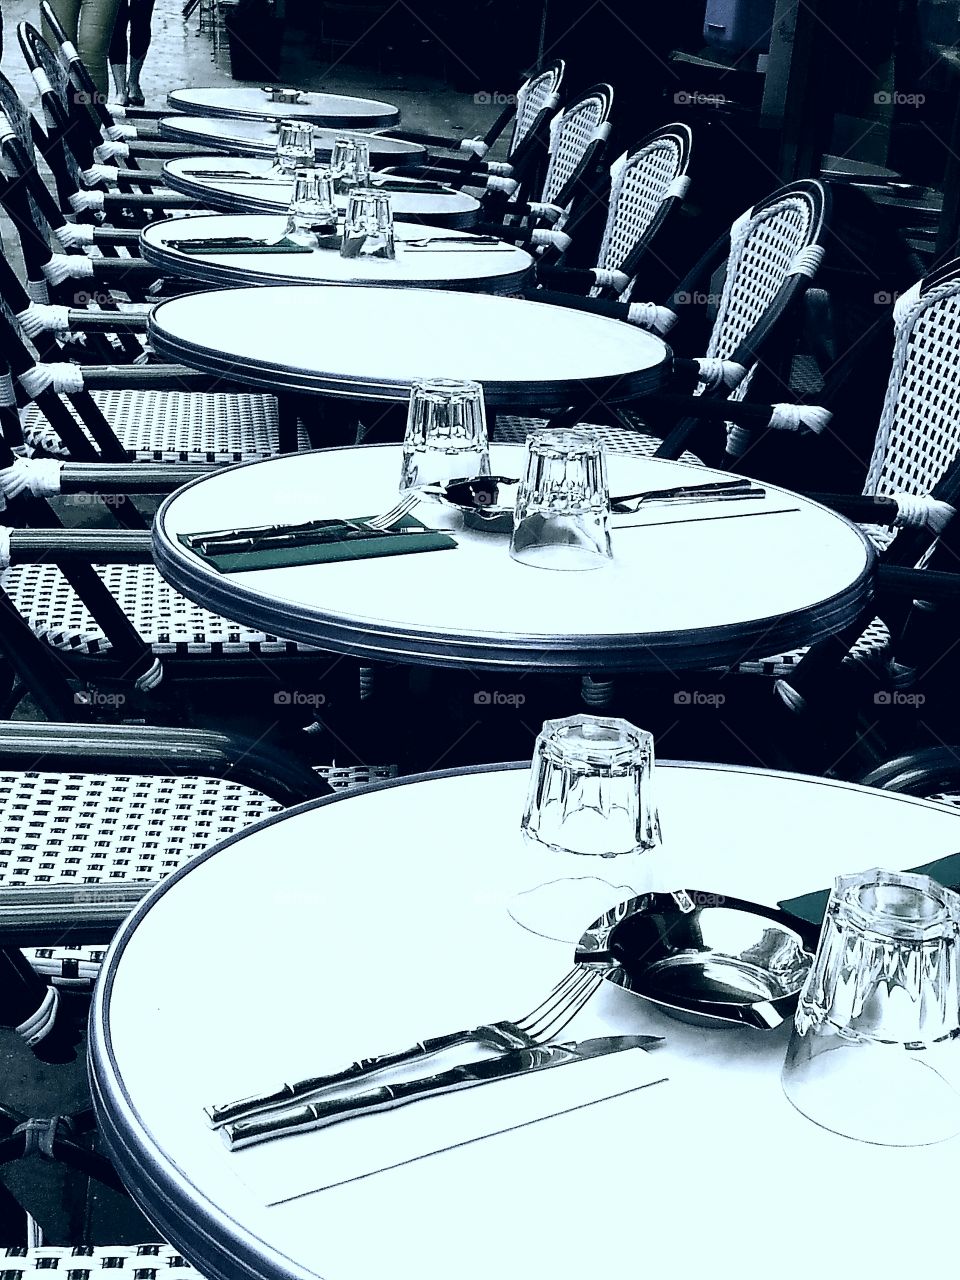 Paris cafe tables